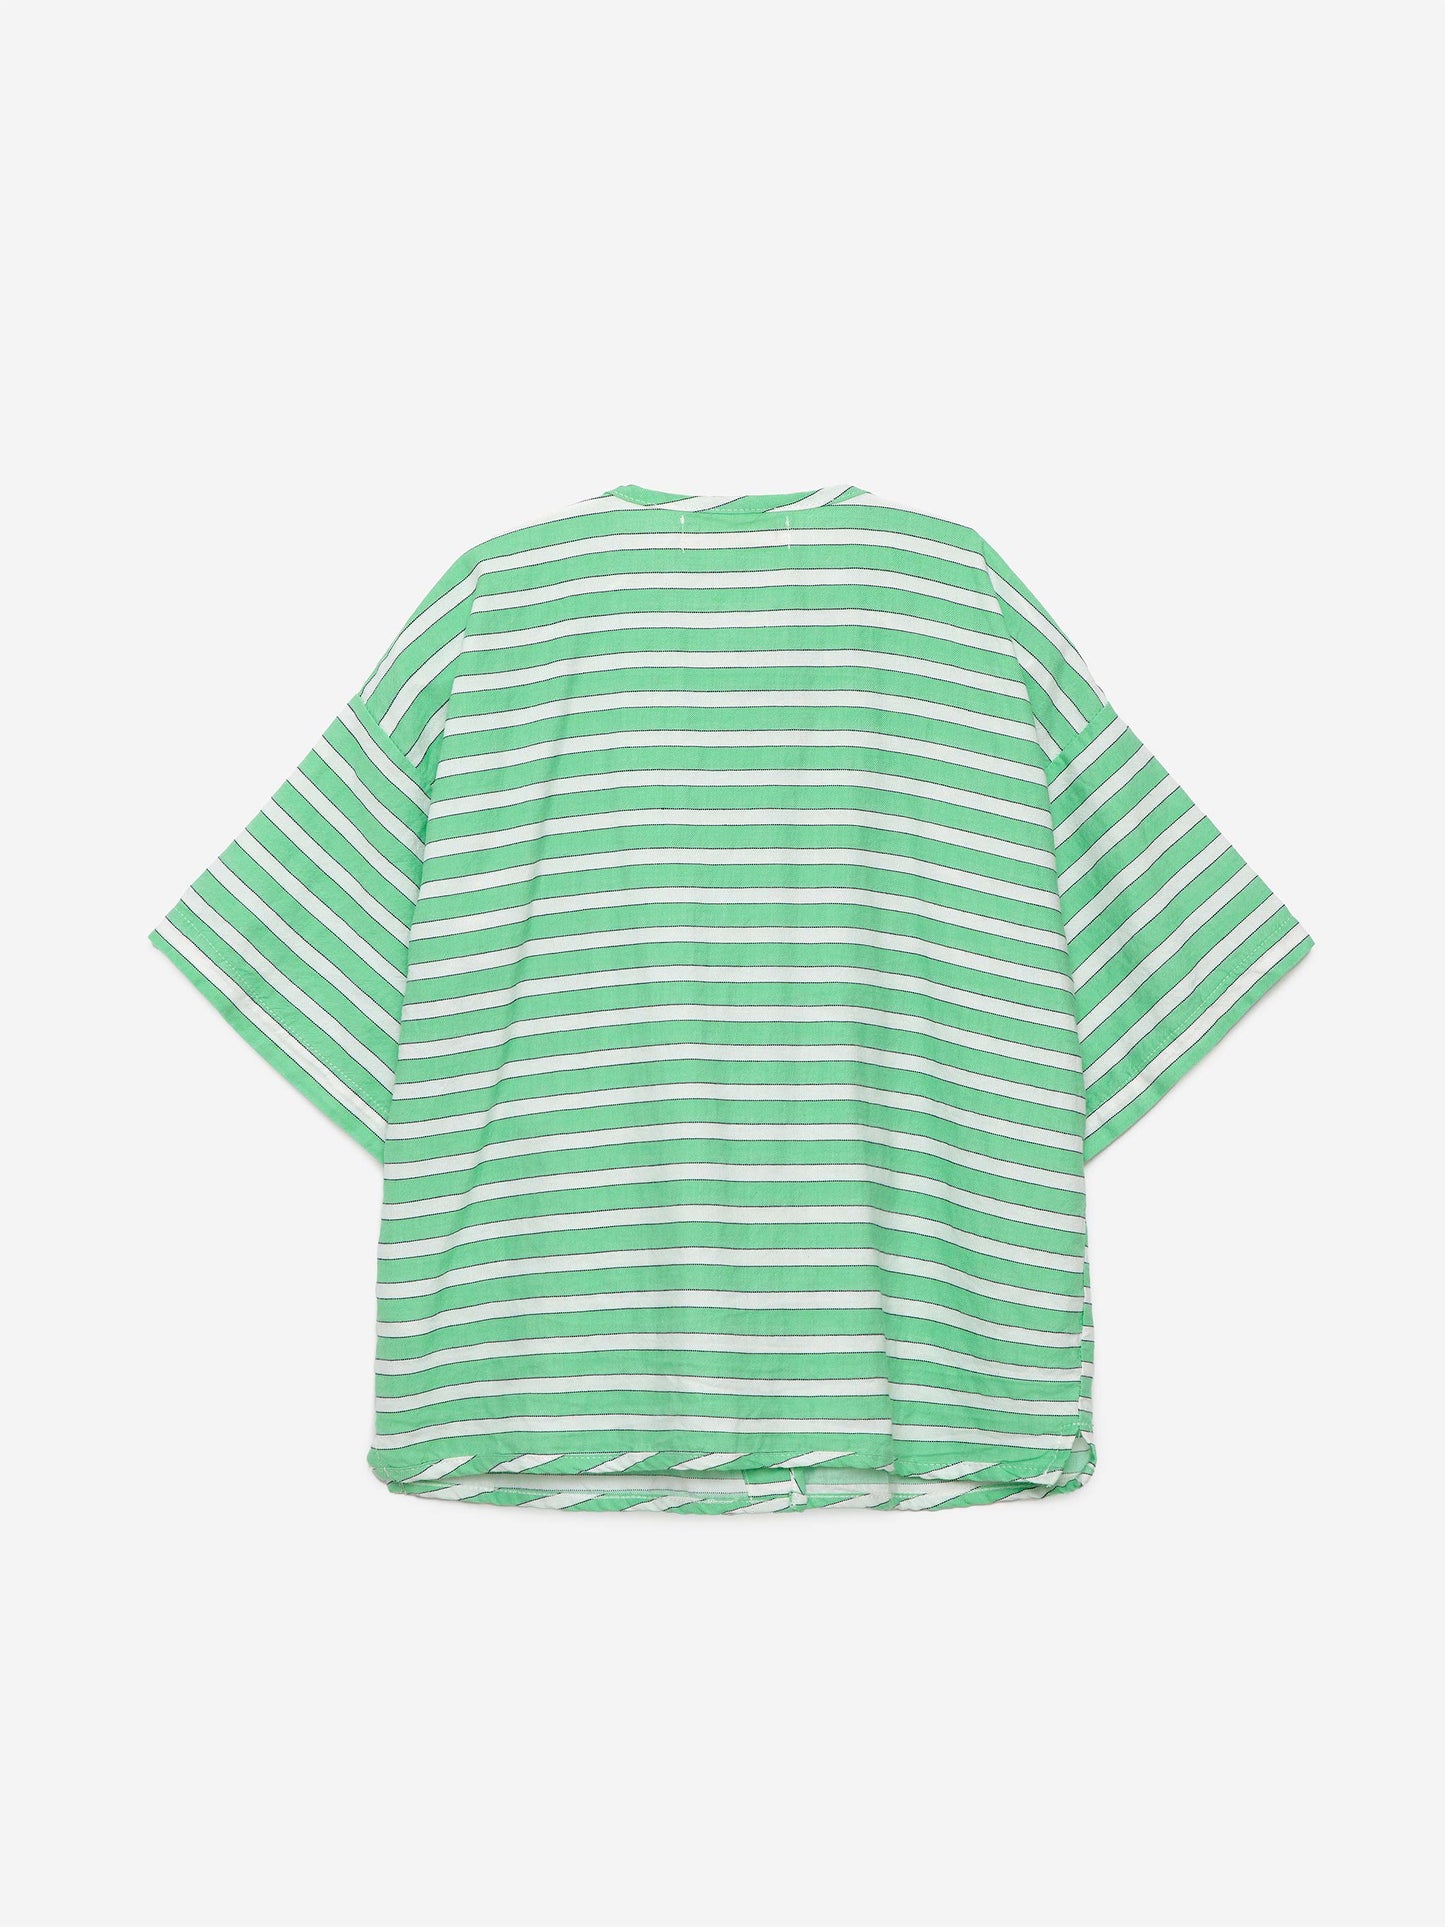 Shirt nº04 Nile Green